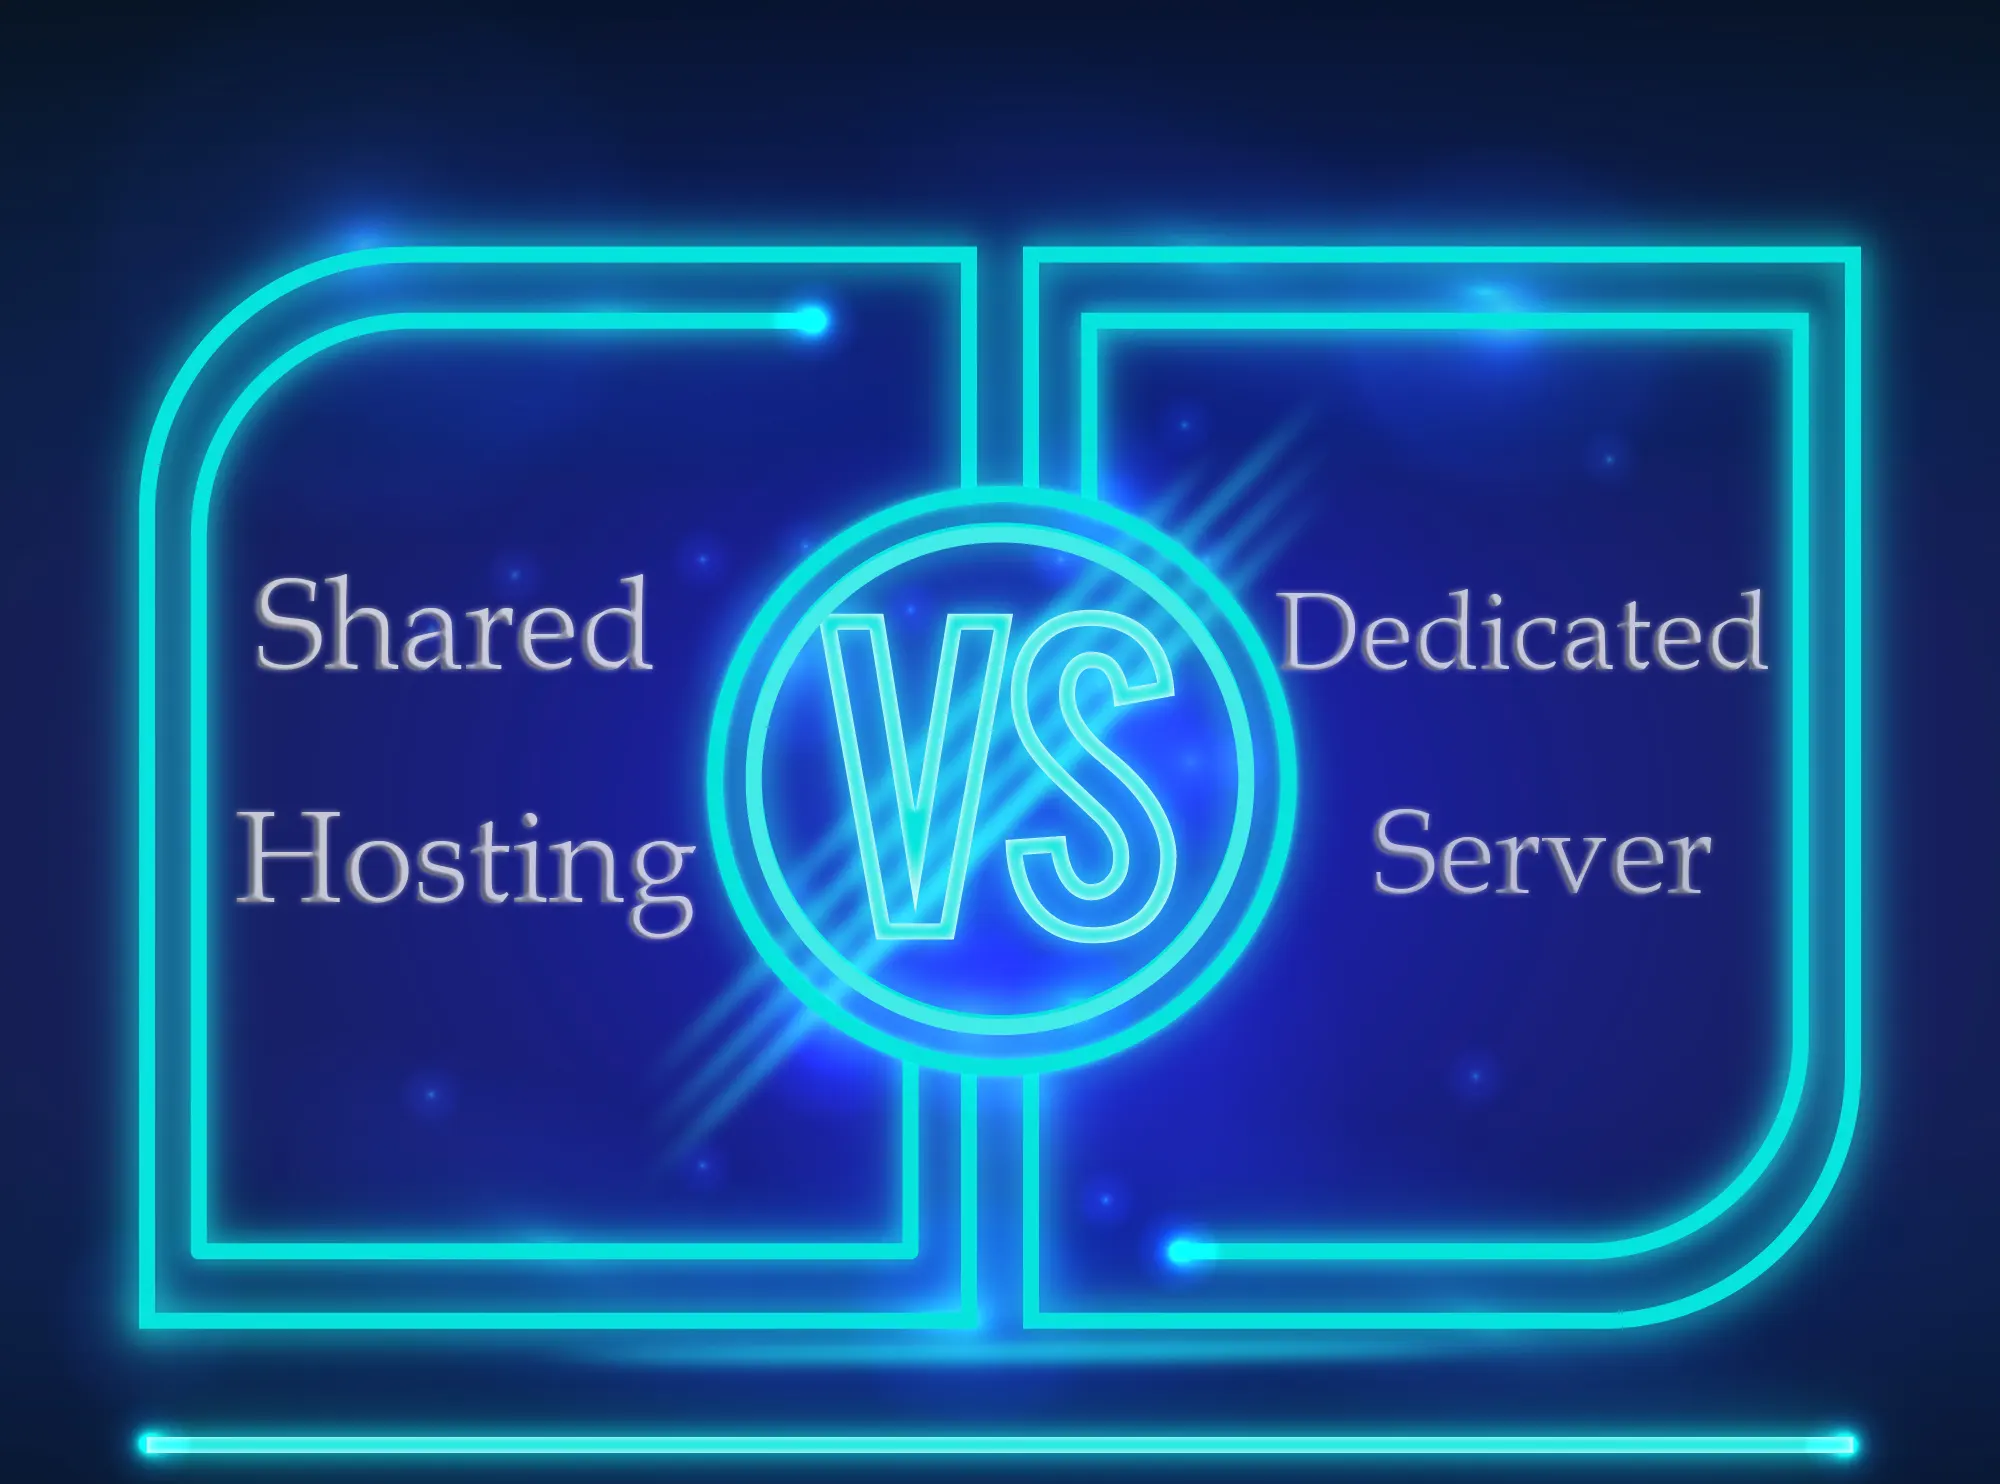 shared hosting vs dedicated server